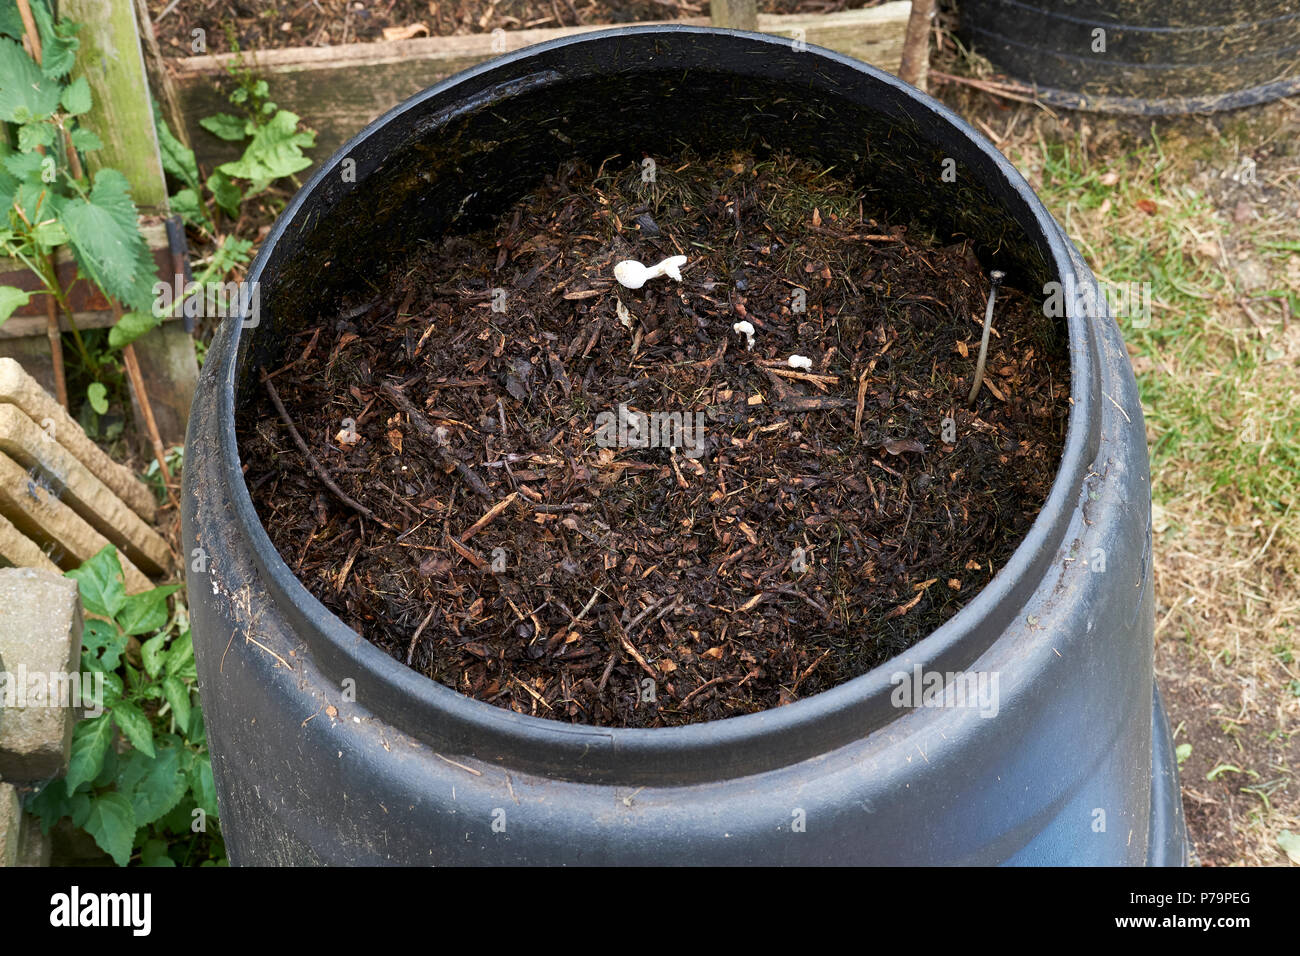 Parzialmente composta da cucina verde e scarti da giardino con la crescita di funghi in un giardino interno in plastica nera compost bin in una casa giardino vegetale, UK. Foto Stock